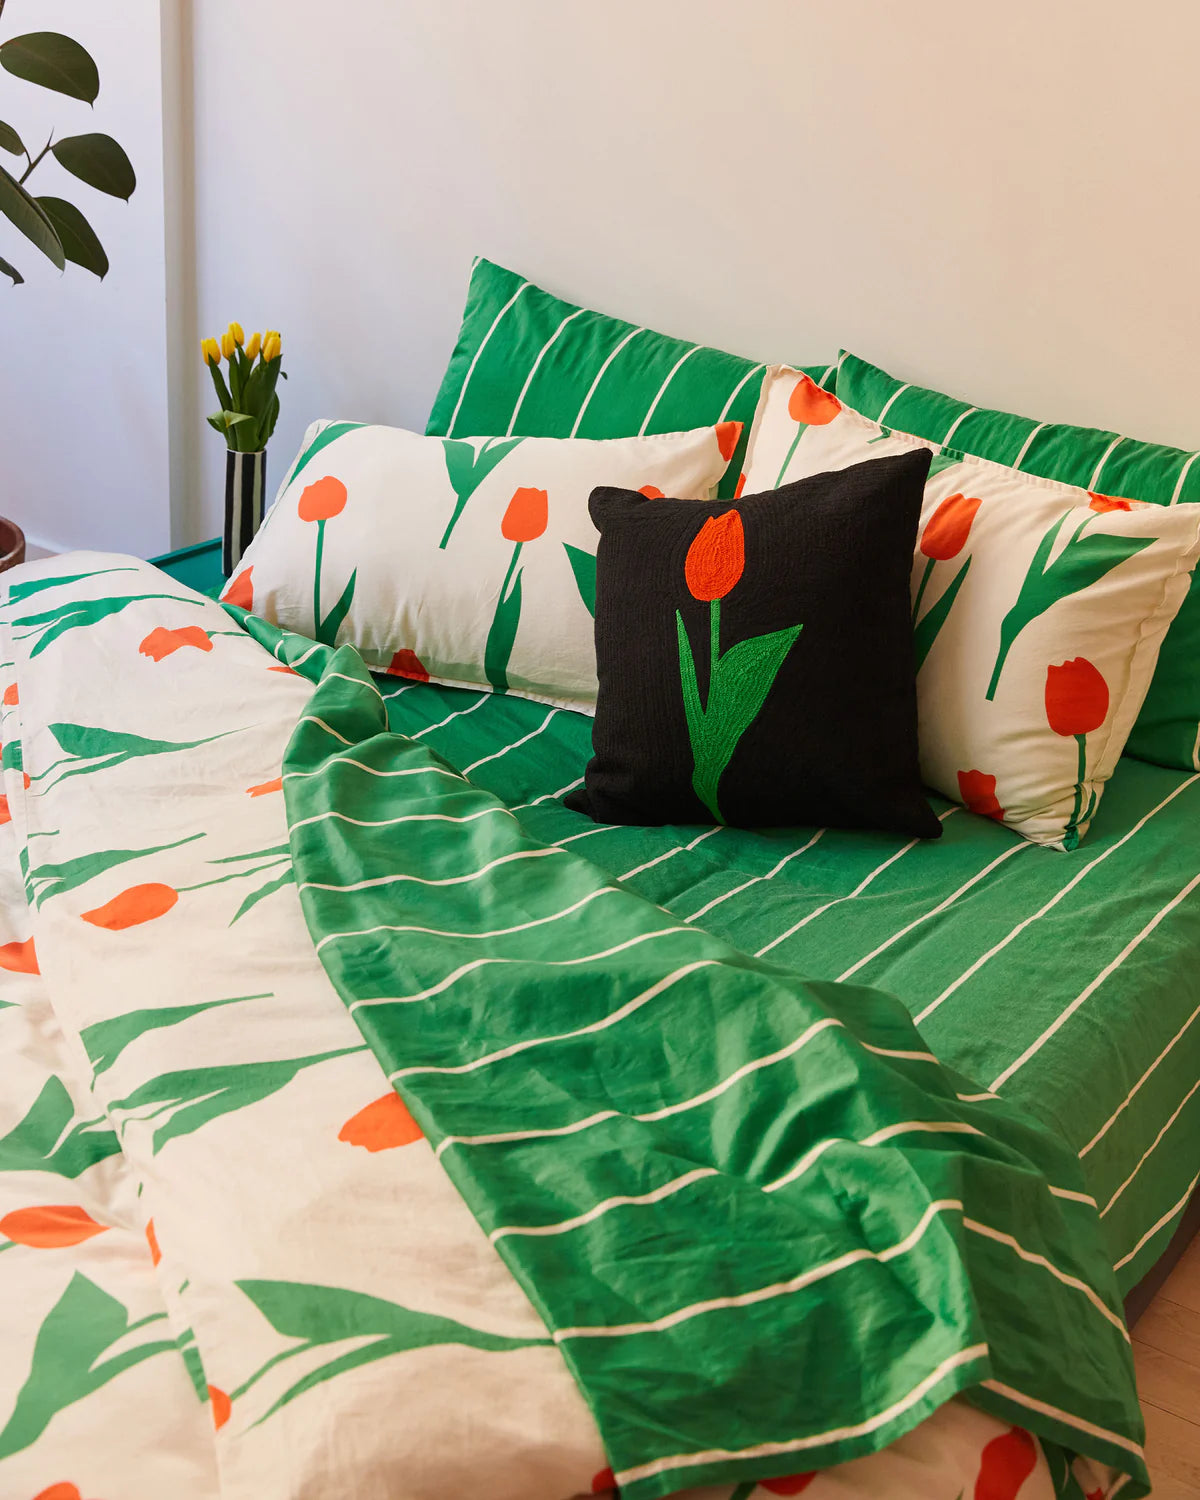 coussin noir avec une tulipe rouge et verte brodé. Le coussin est posé sur un lit avec des draps rayés verts et blancs et d'autres coussins tulipe blanc rouge et vert